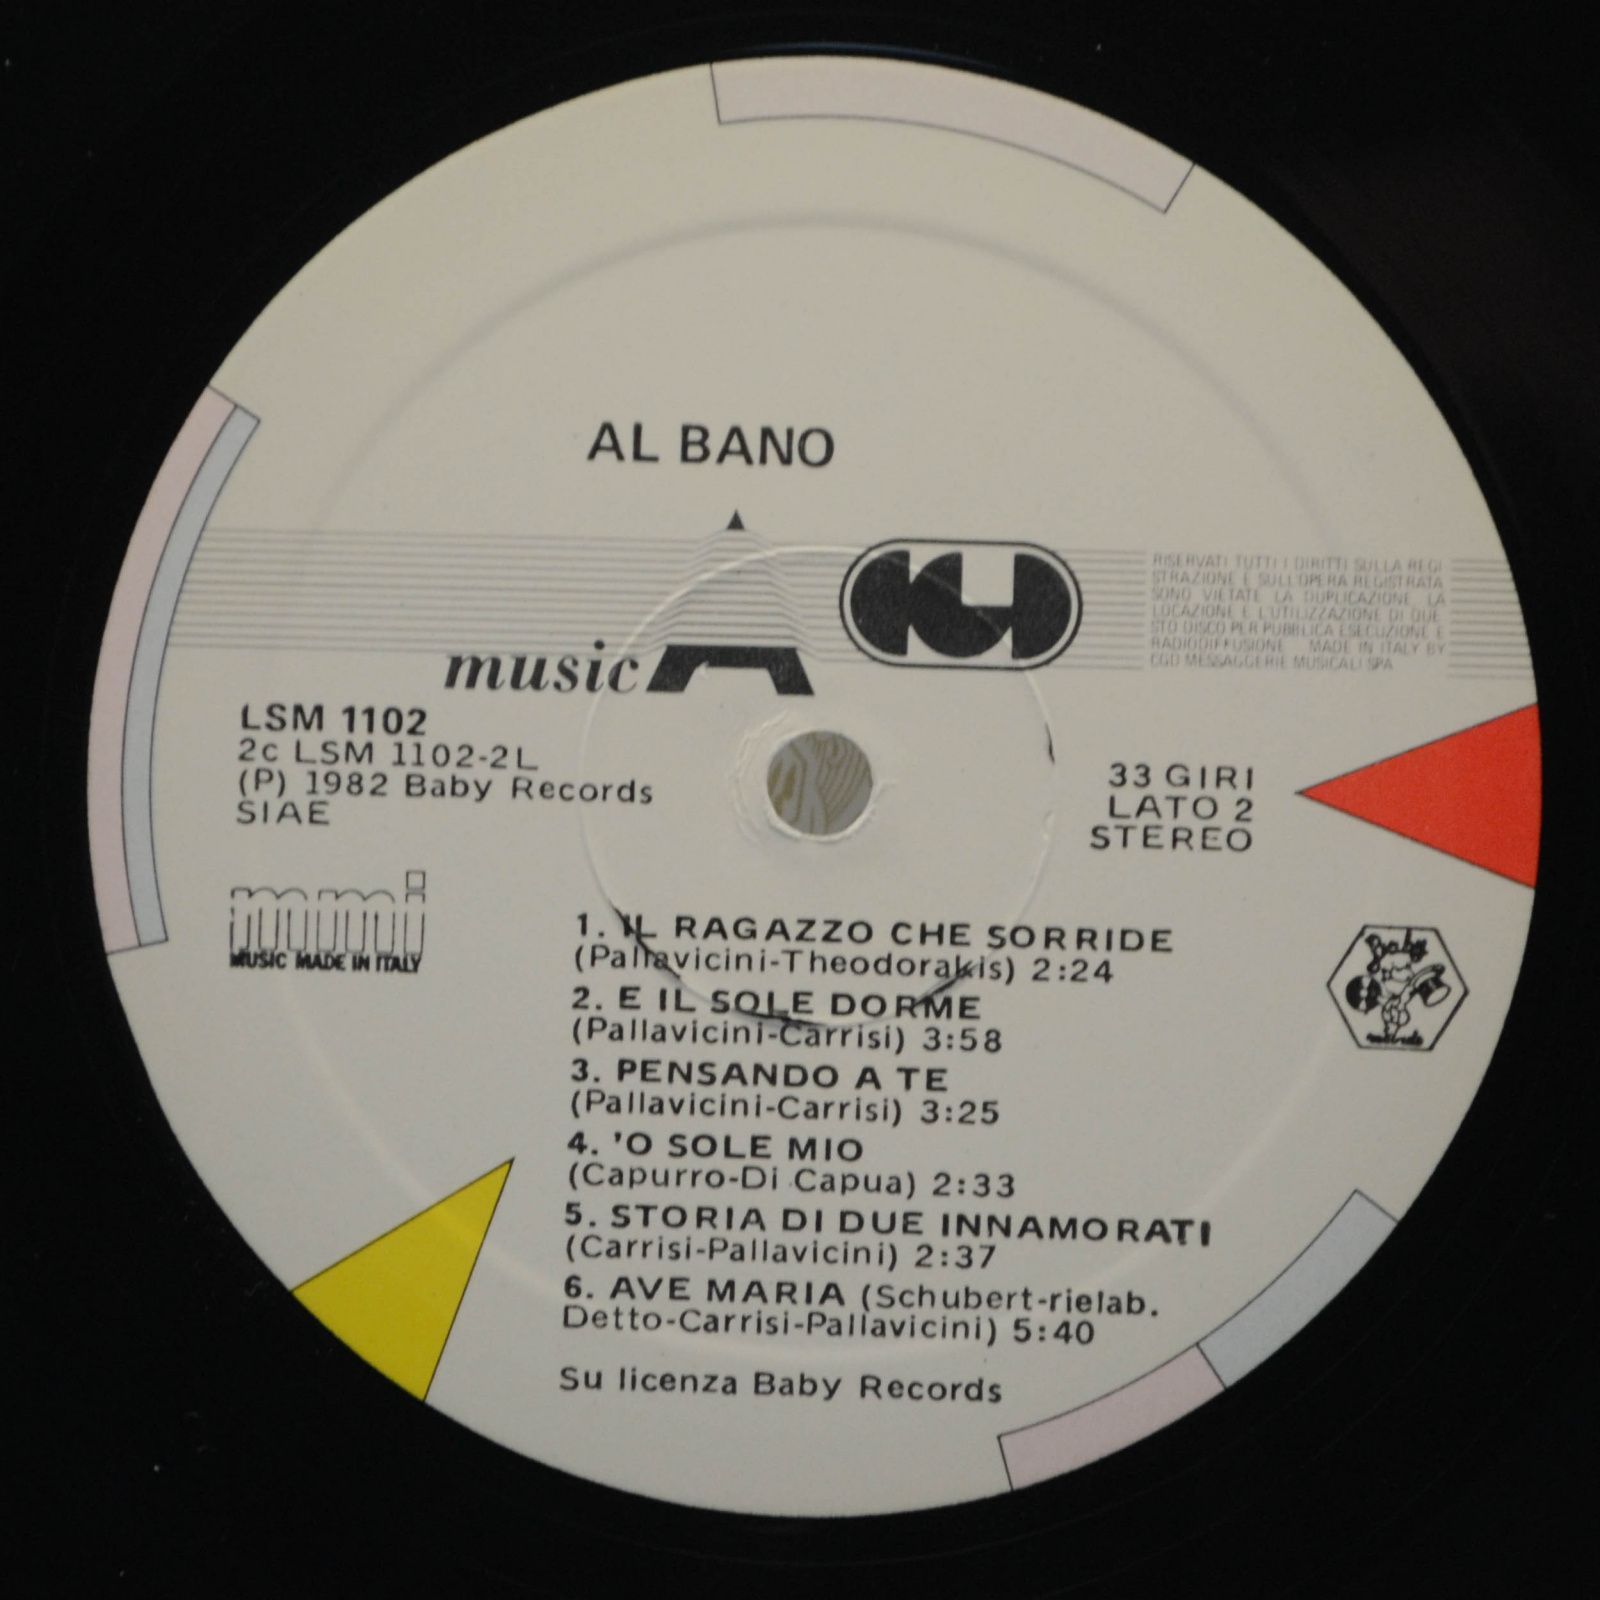 Al Bano — Al Bano (Italy), 1984